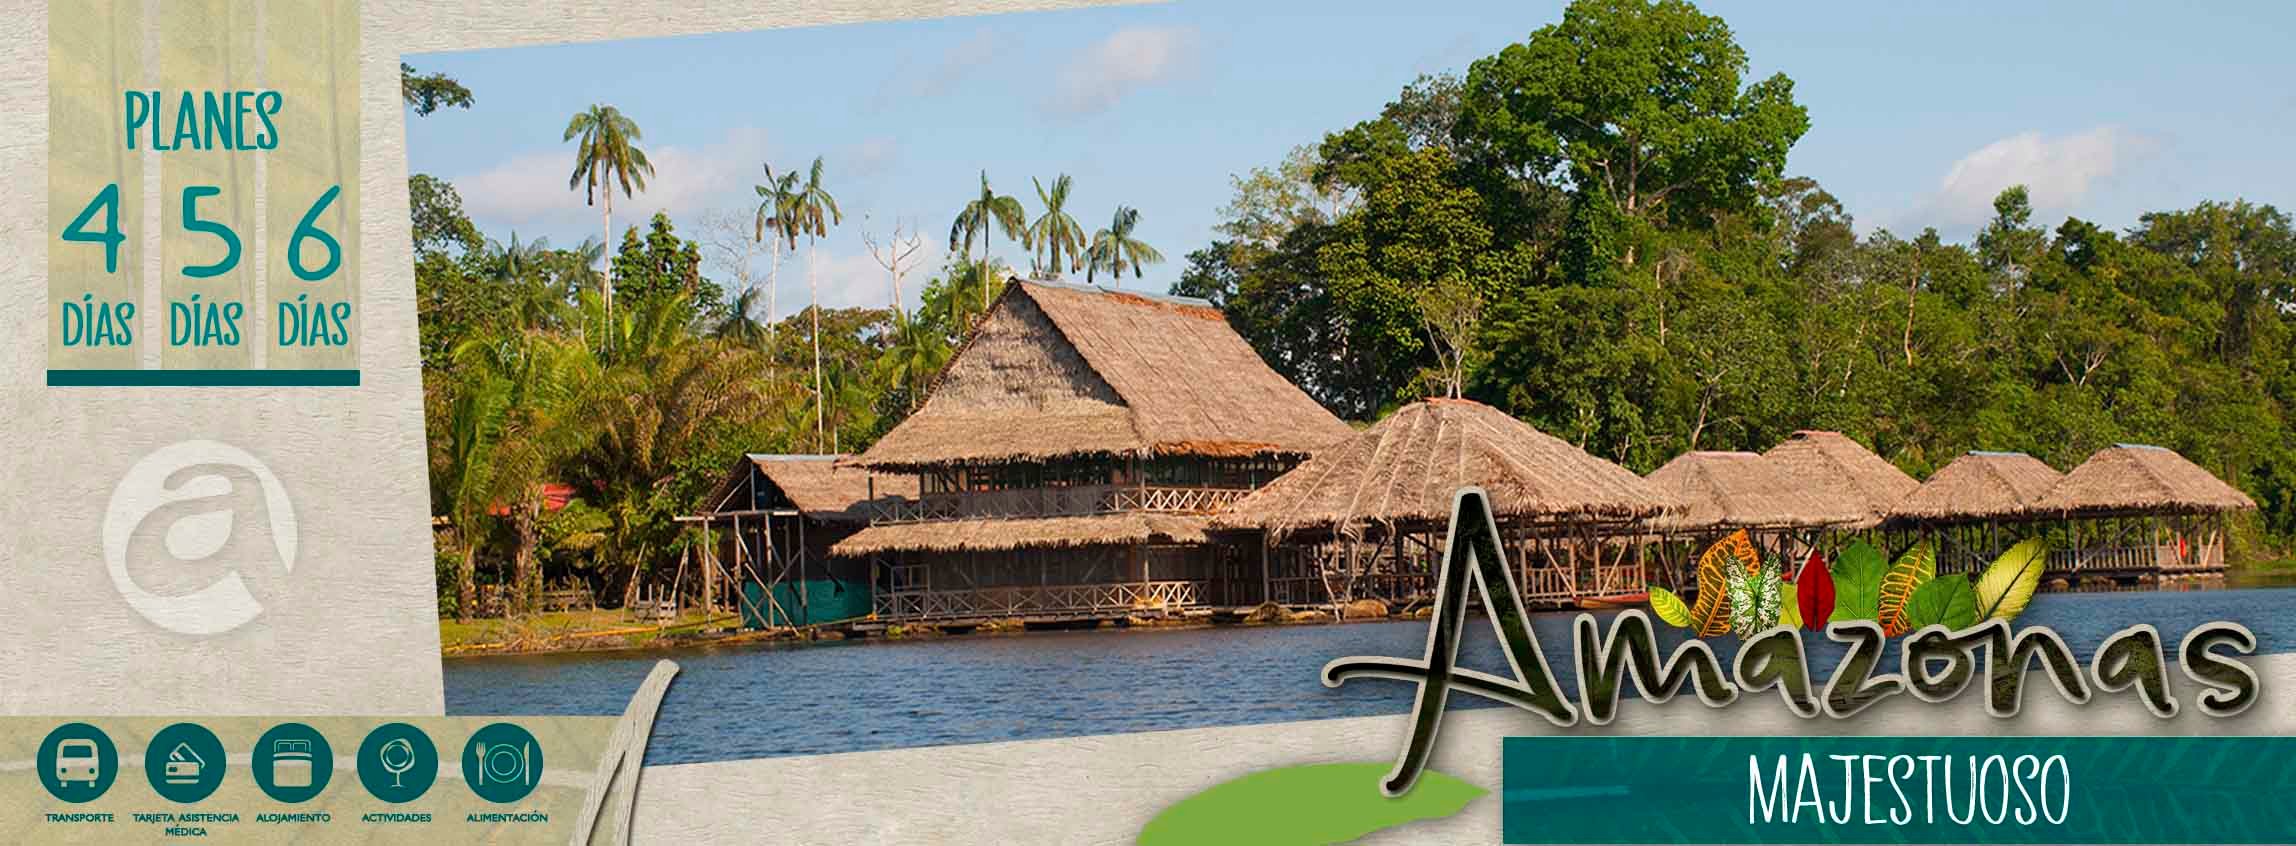 Planes turísticos Amazonas